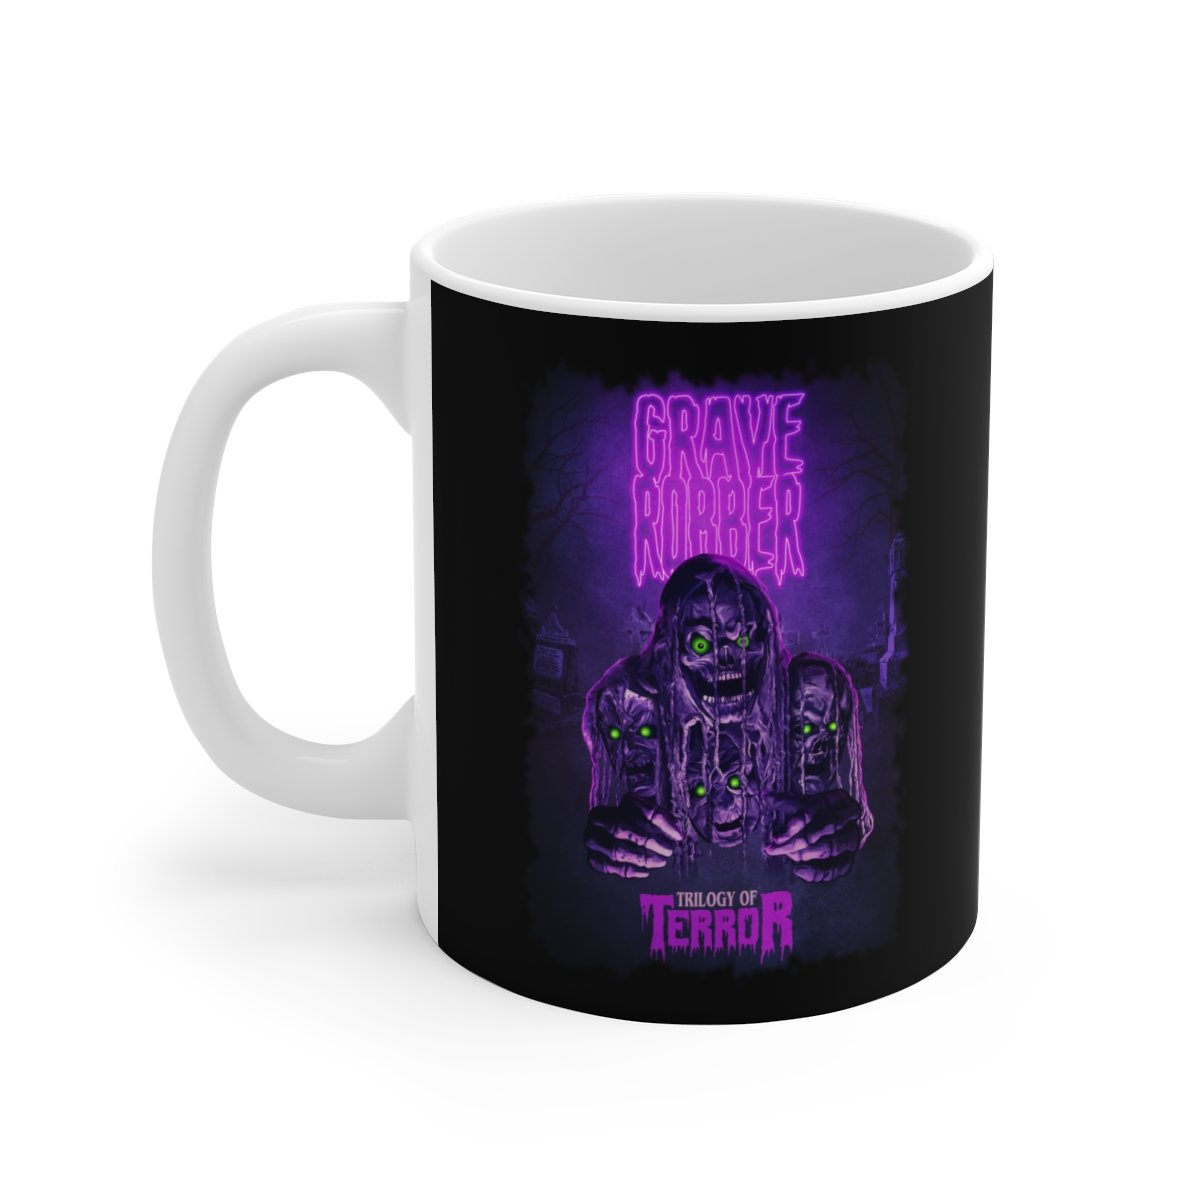 Grave Robber – Trilogy of Terror  White Ceramic Mug